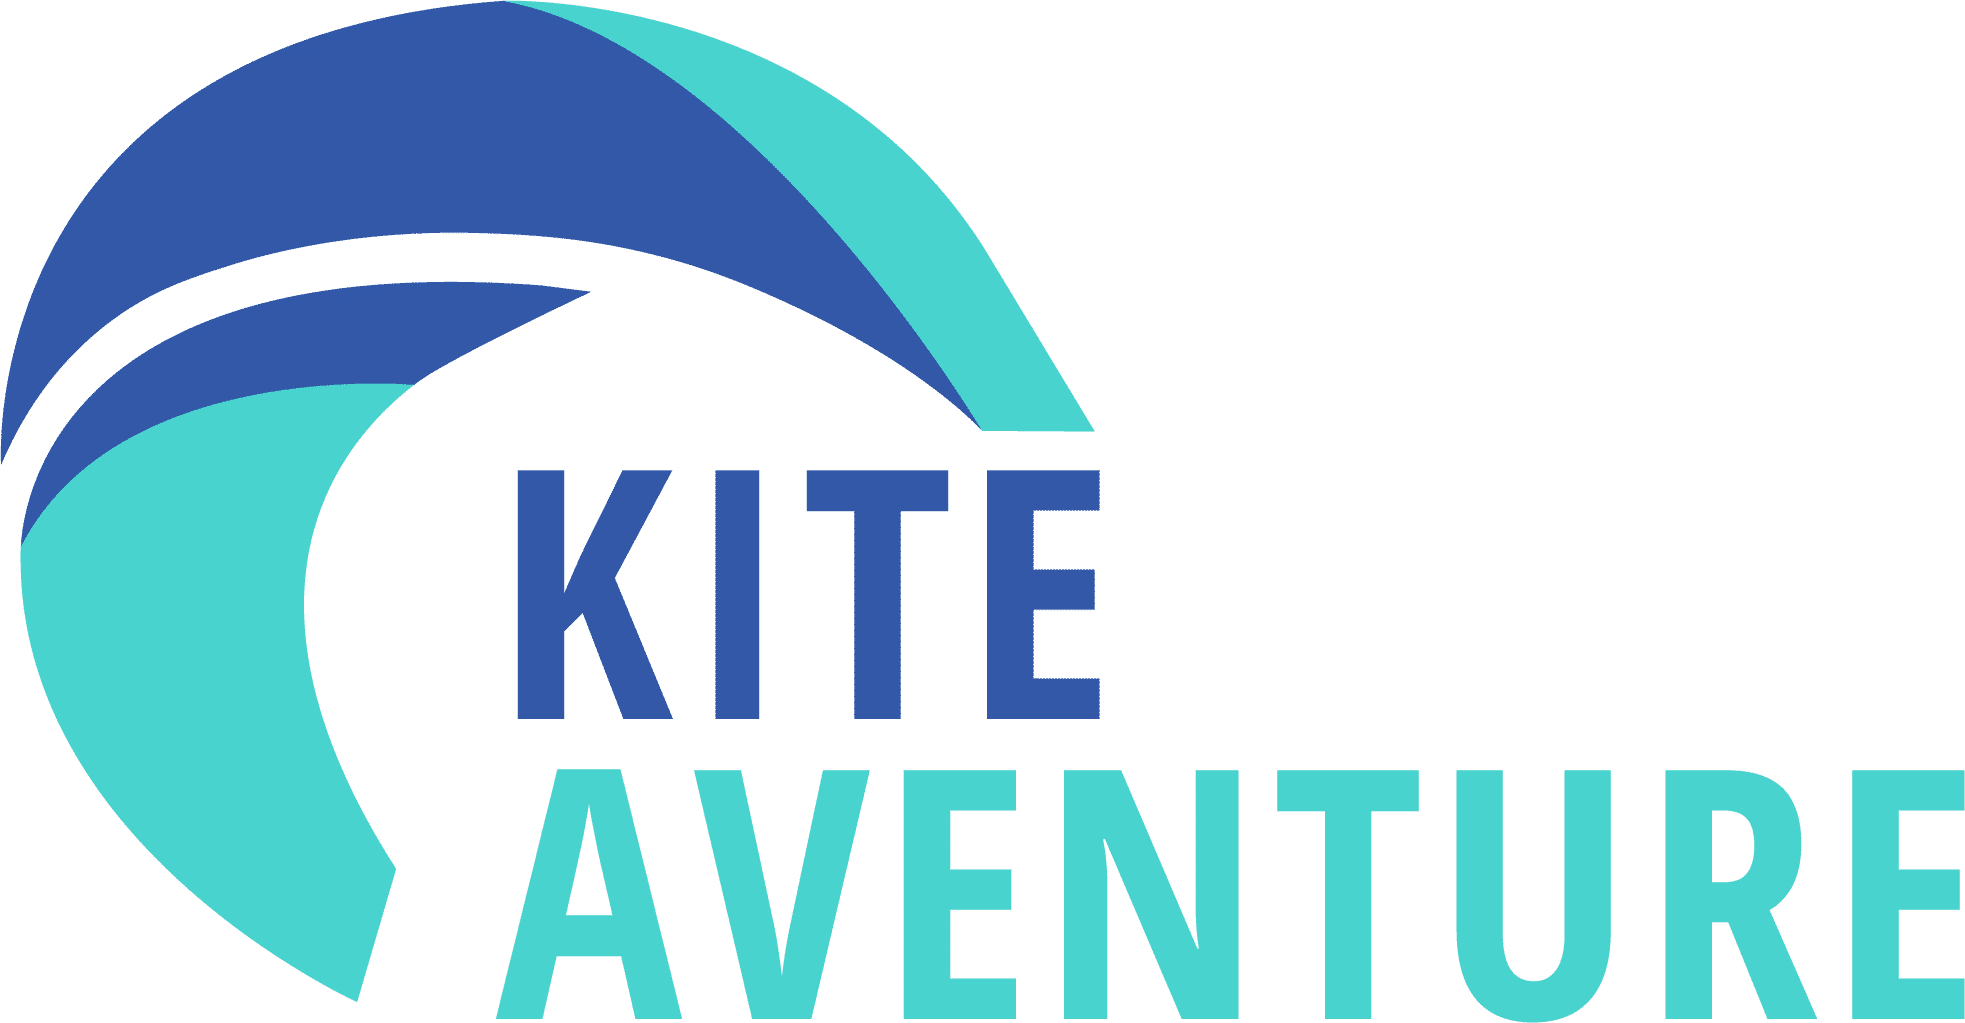 Kite Aventure